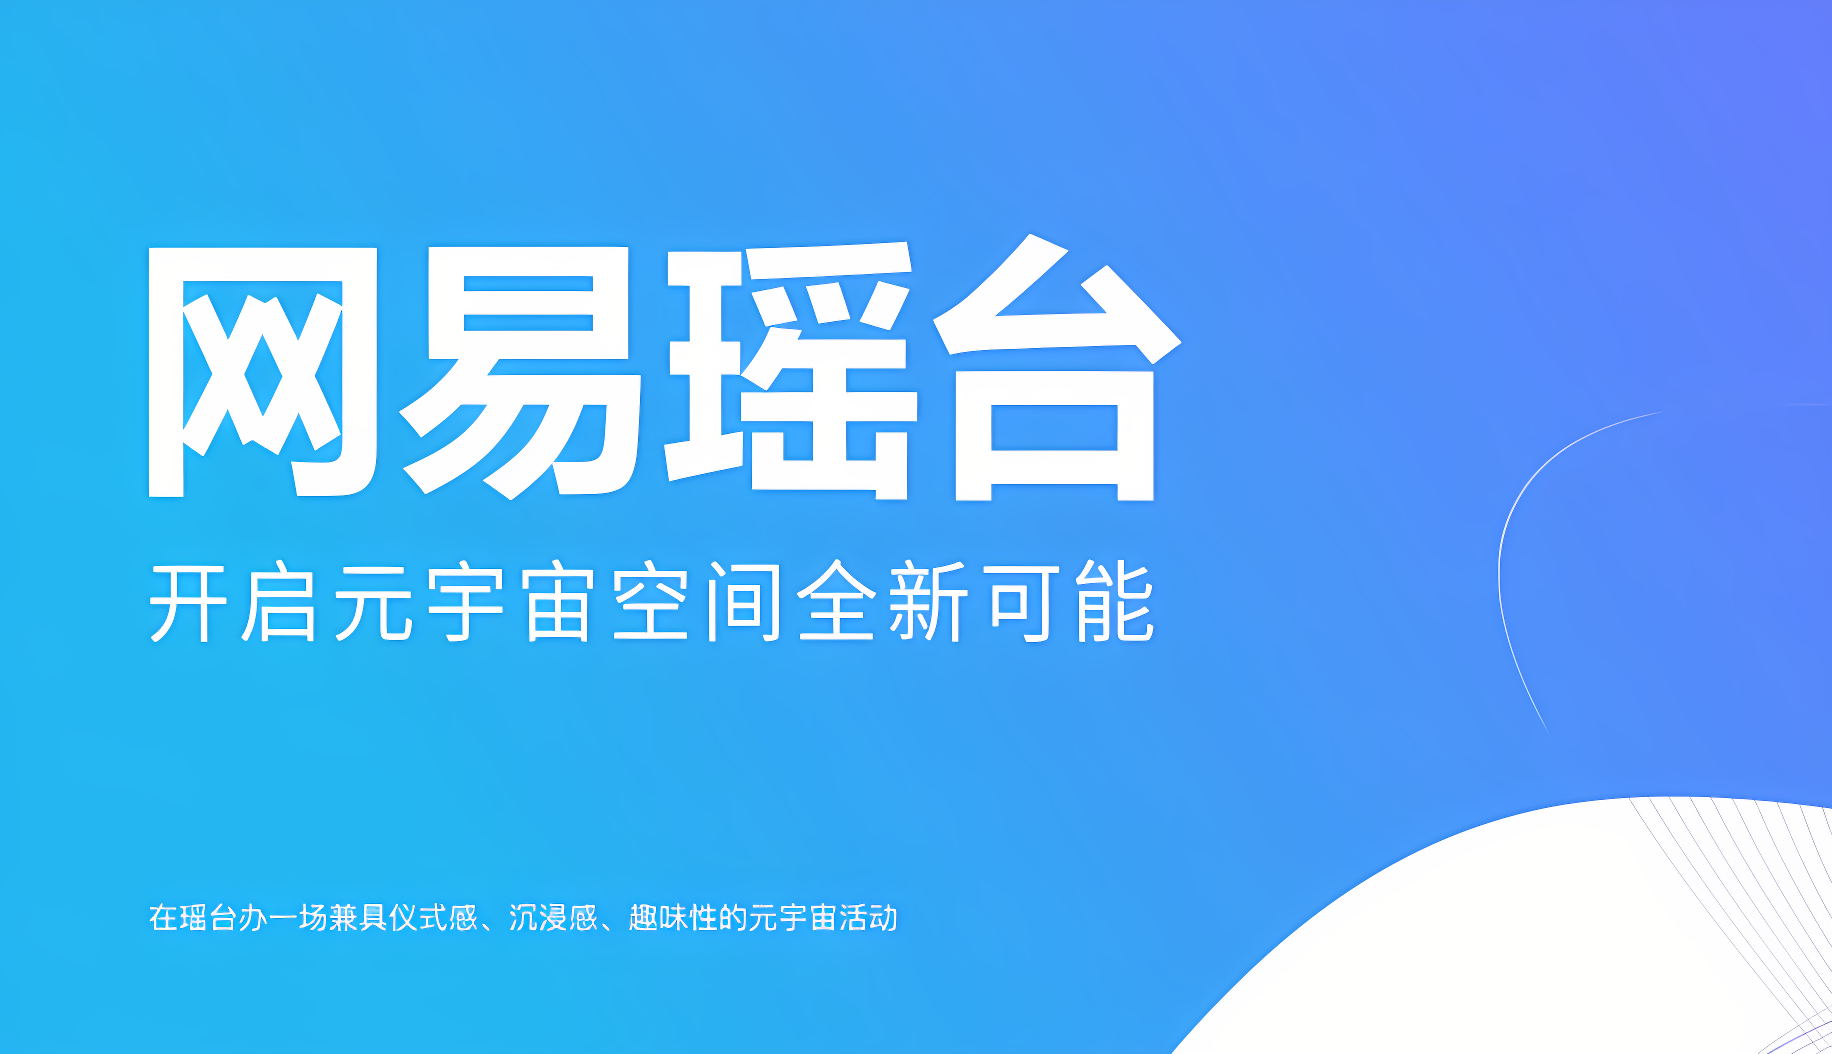 图片为一张平面设计图，主要颜色为蓝色，包含白色中文文字“周末会员 新用户专属福利日”，旁边有简洁的图形装饰。